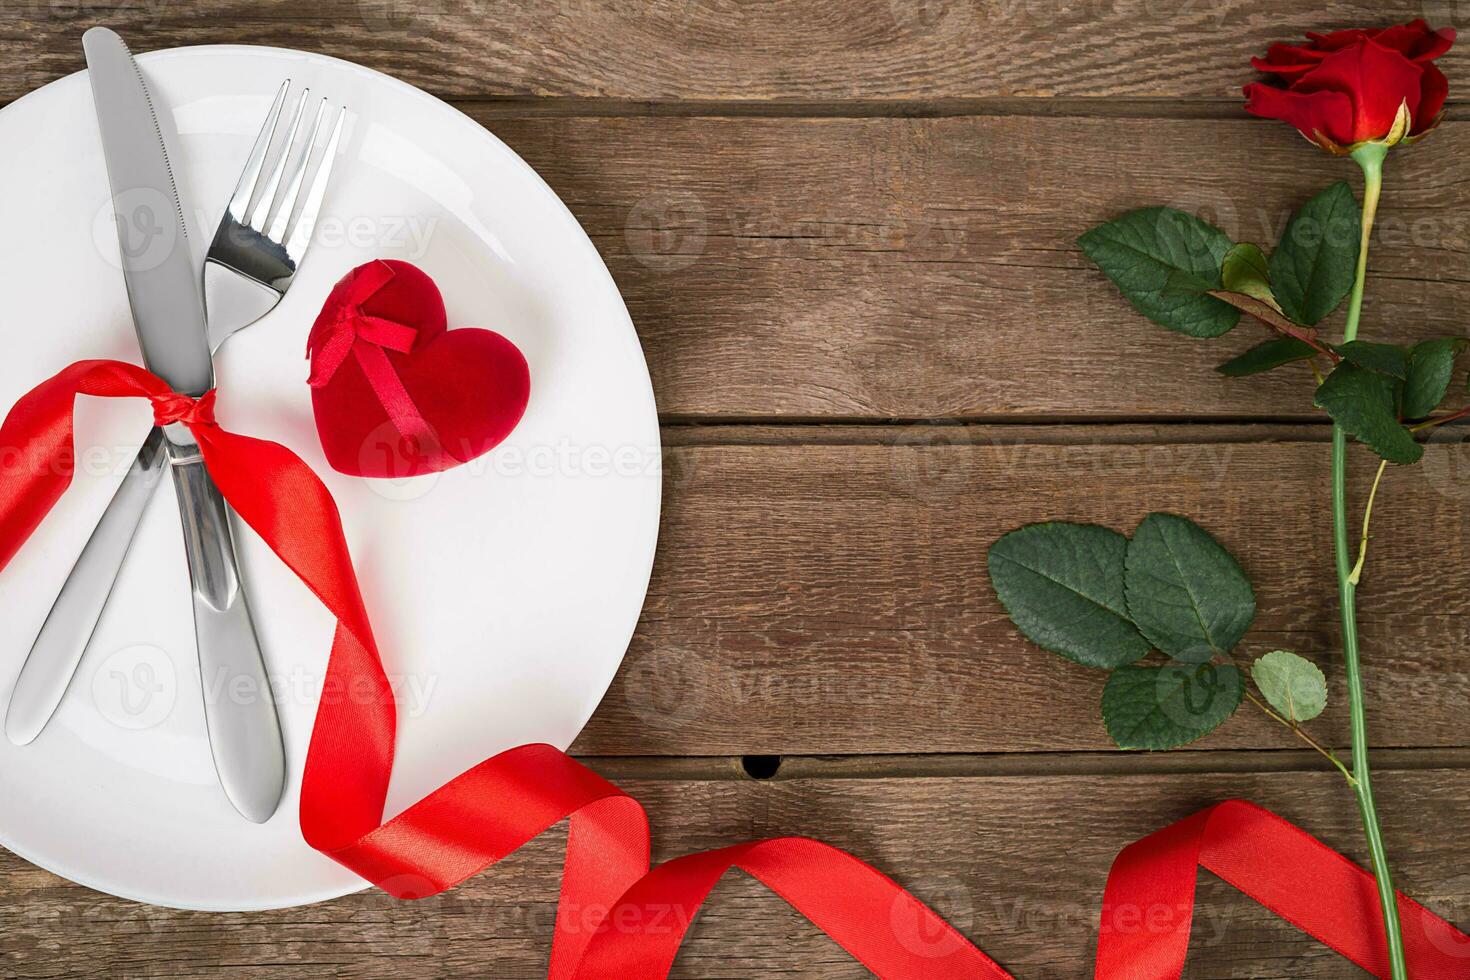 san valentin día mesa ajuste con lámina, tenedor, cuchillo, rojo corazón, cinta y Rosa. antecedentes foto